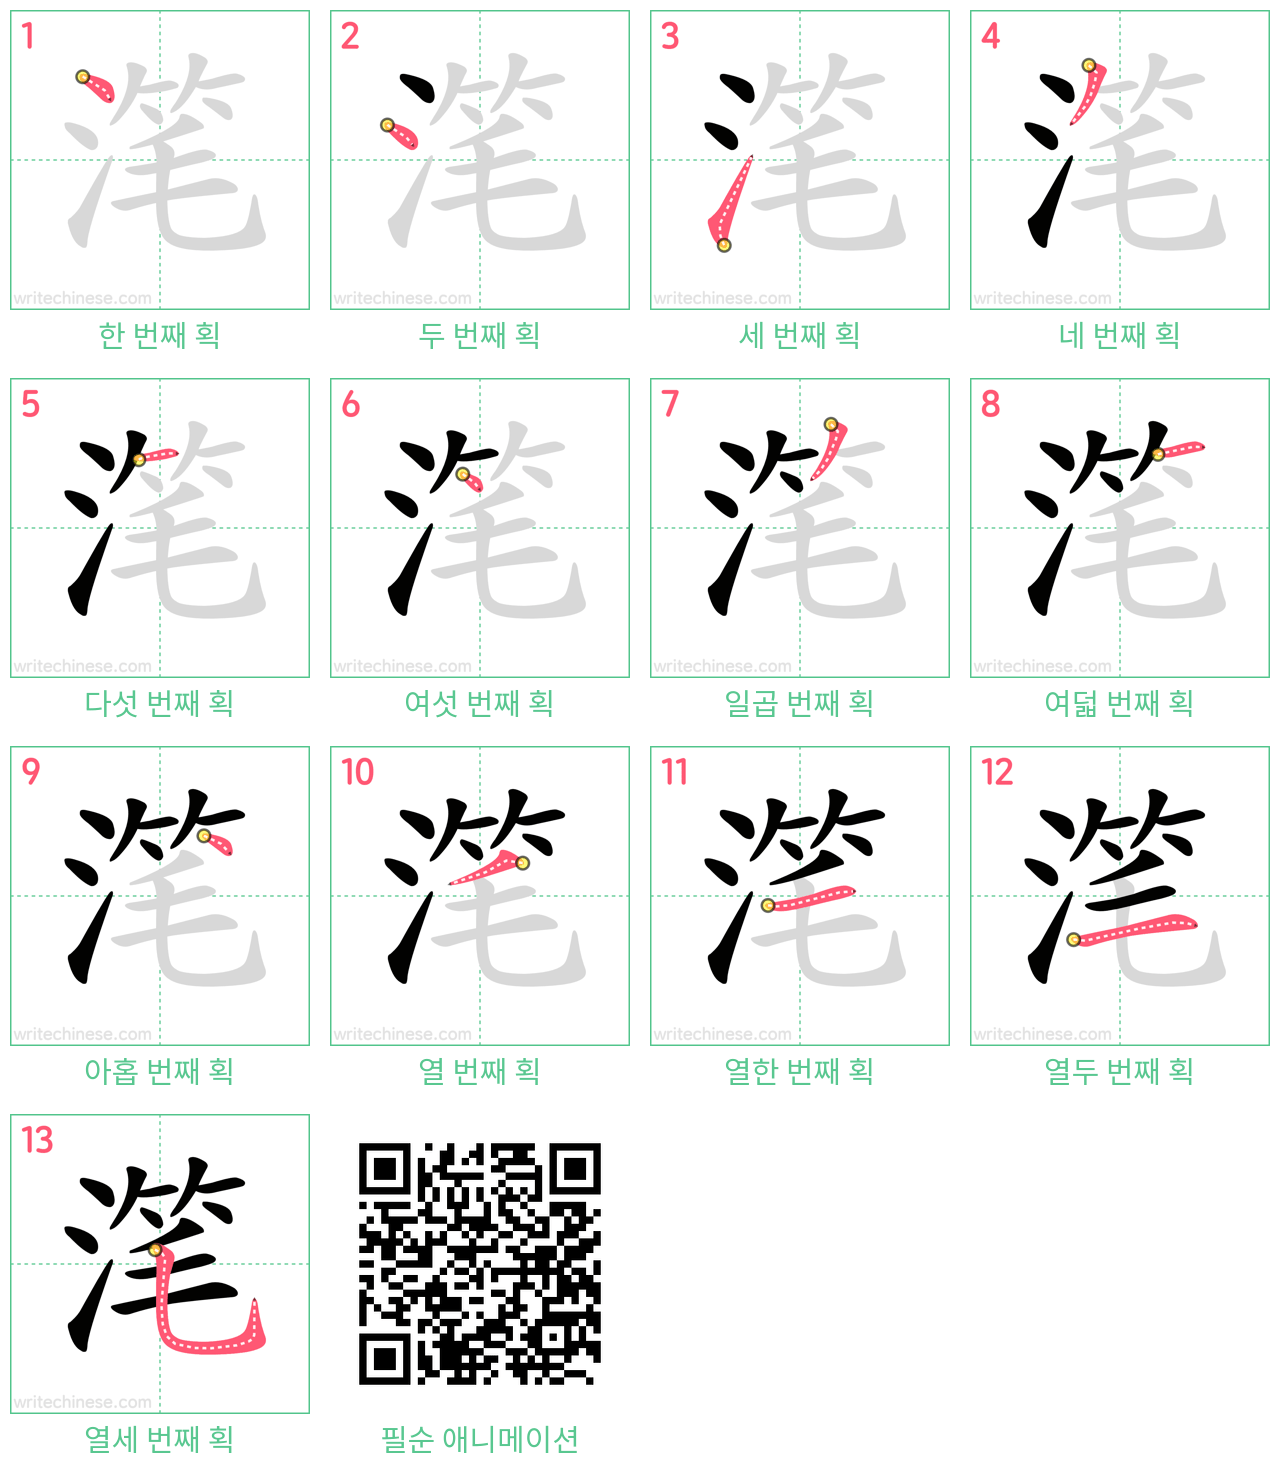 滗 step-by-step stroke order diagrams